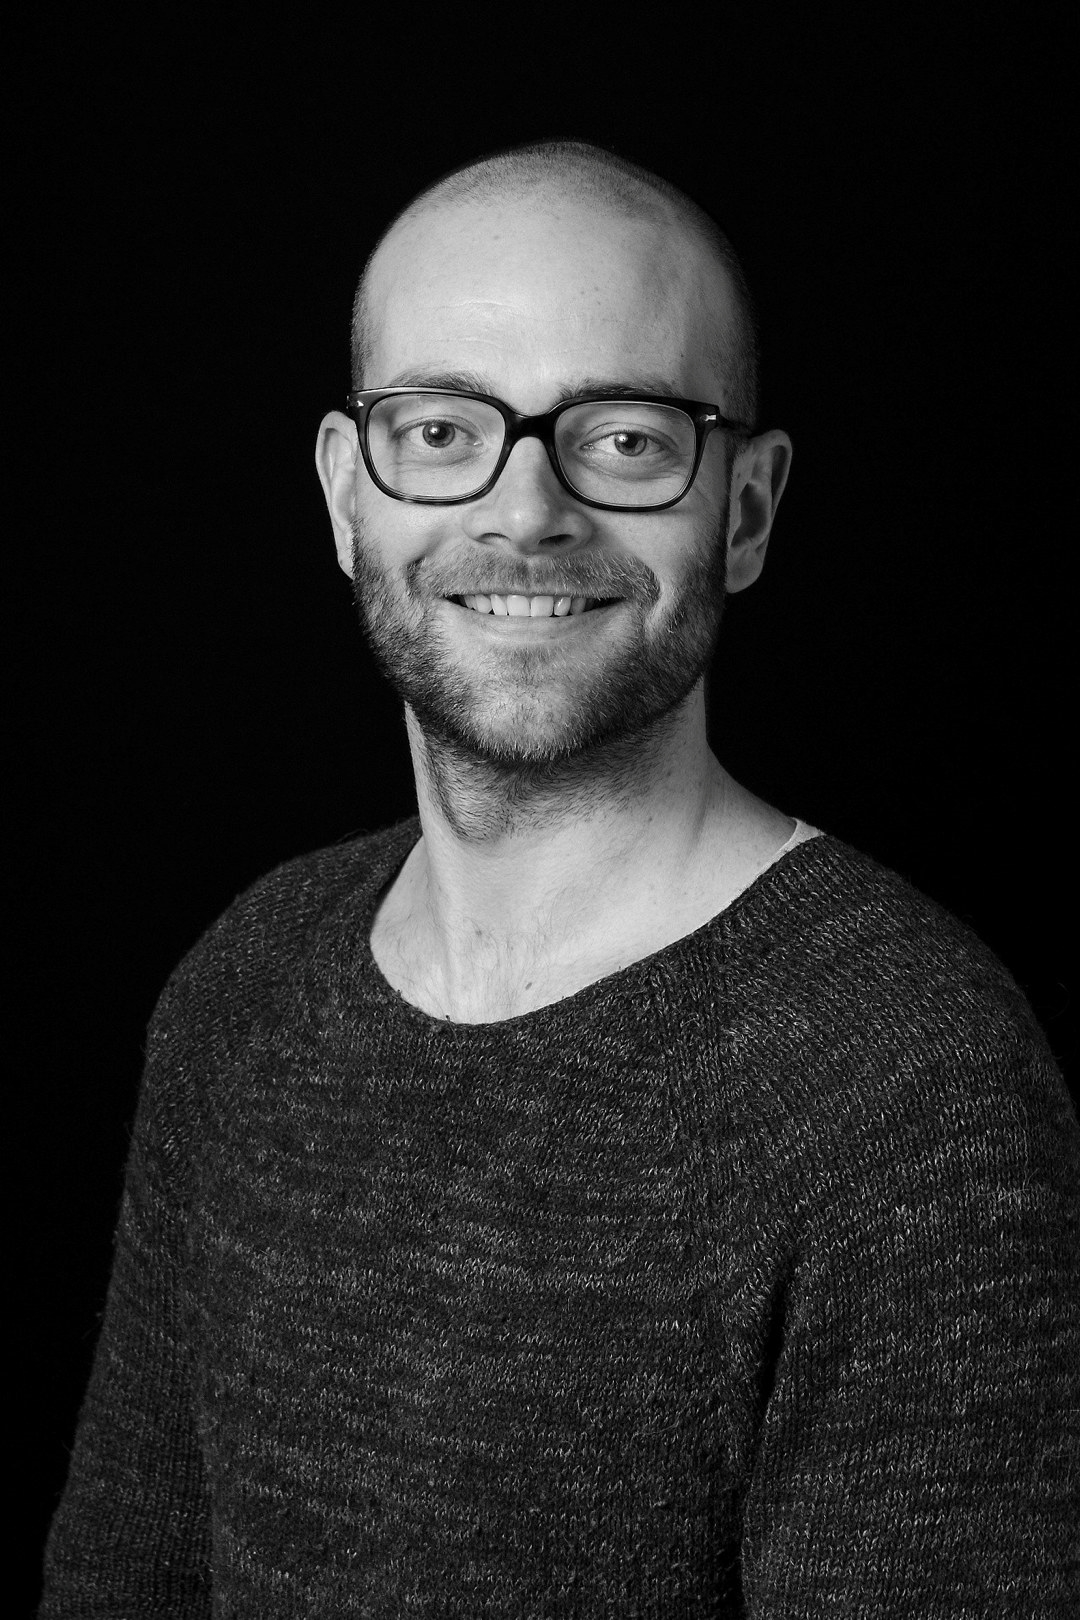 Et portrettbilde av en smilende mann med briller som ser mot kamera. Foto.